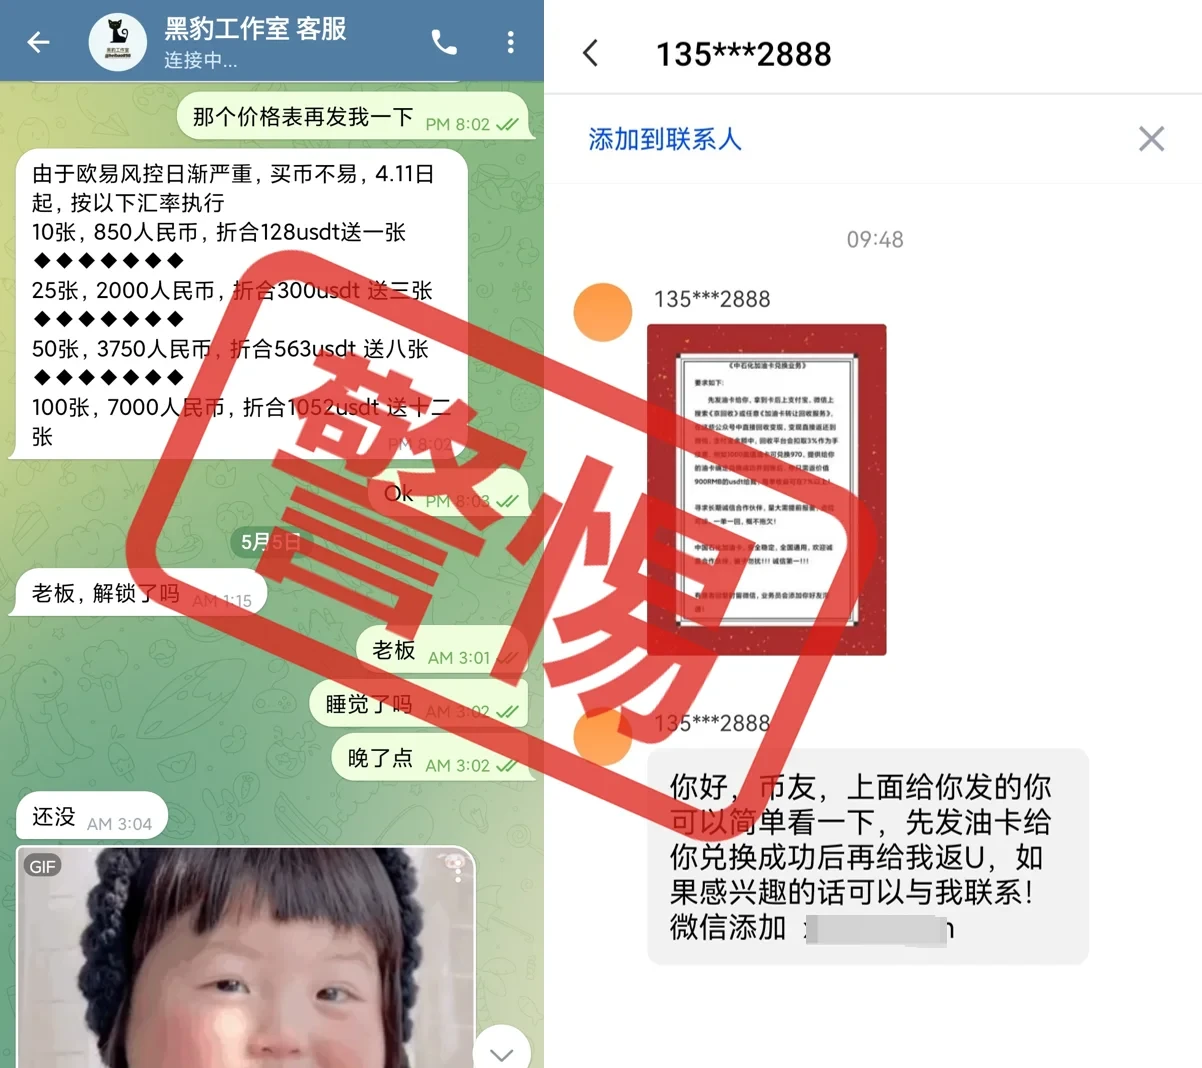 [欧易OKX]4帮助您轻松识破Telegram充值卡骗局